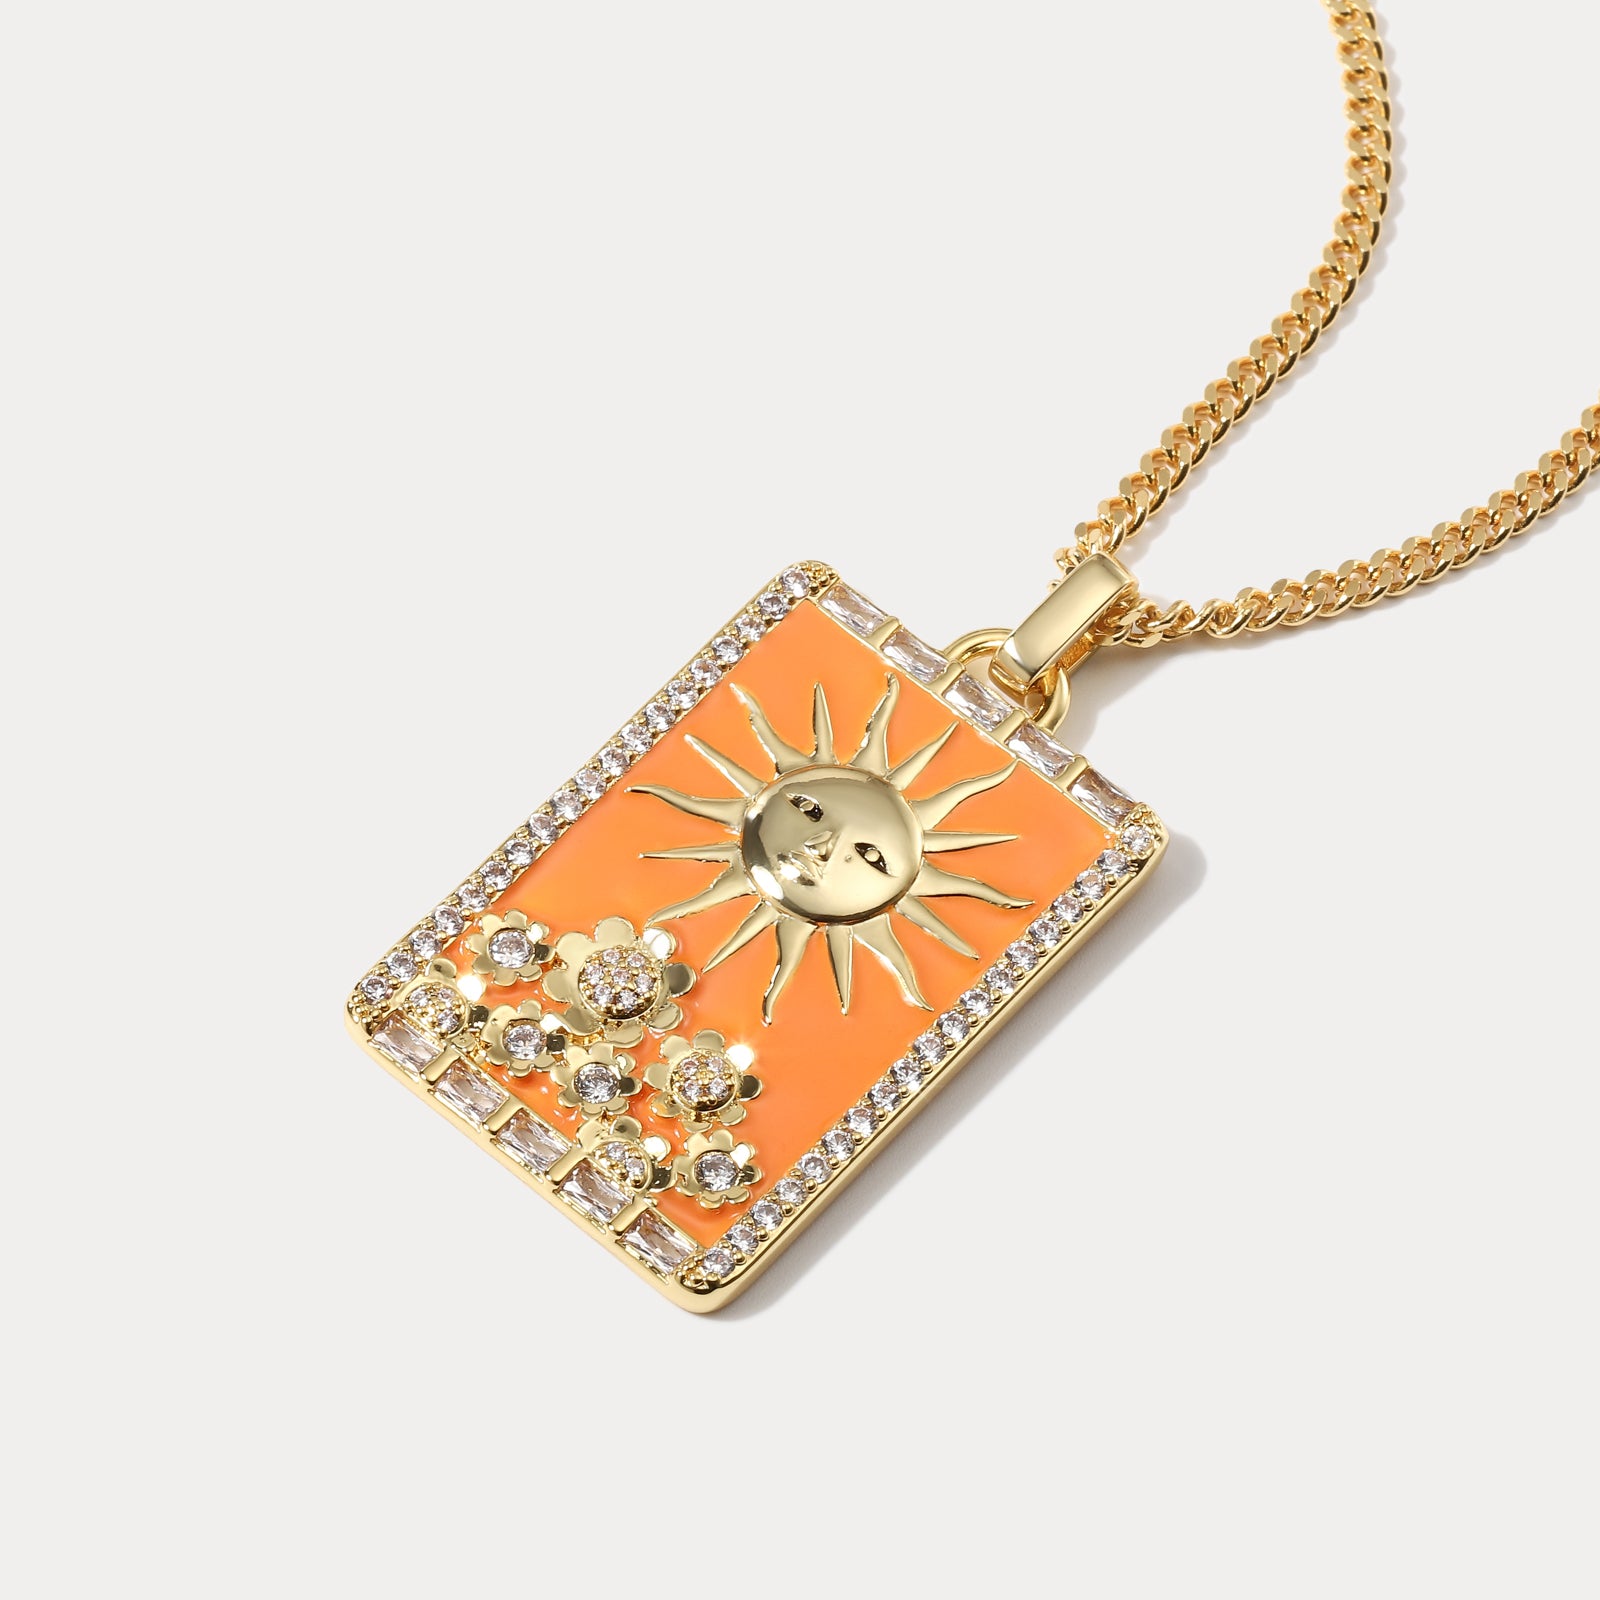 The Sun Facade Tarot Card Necklace